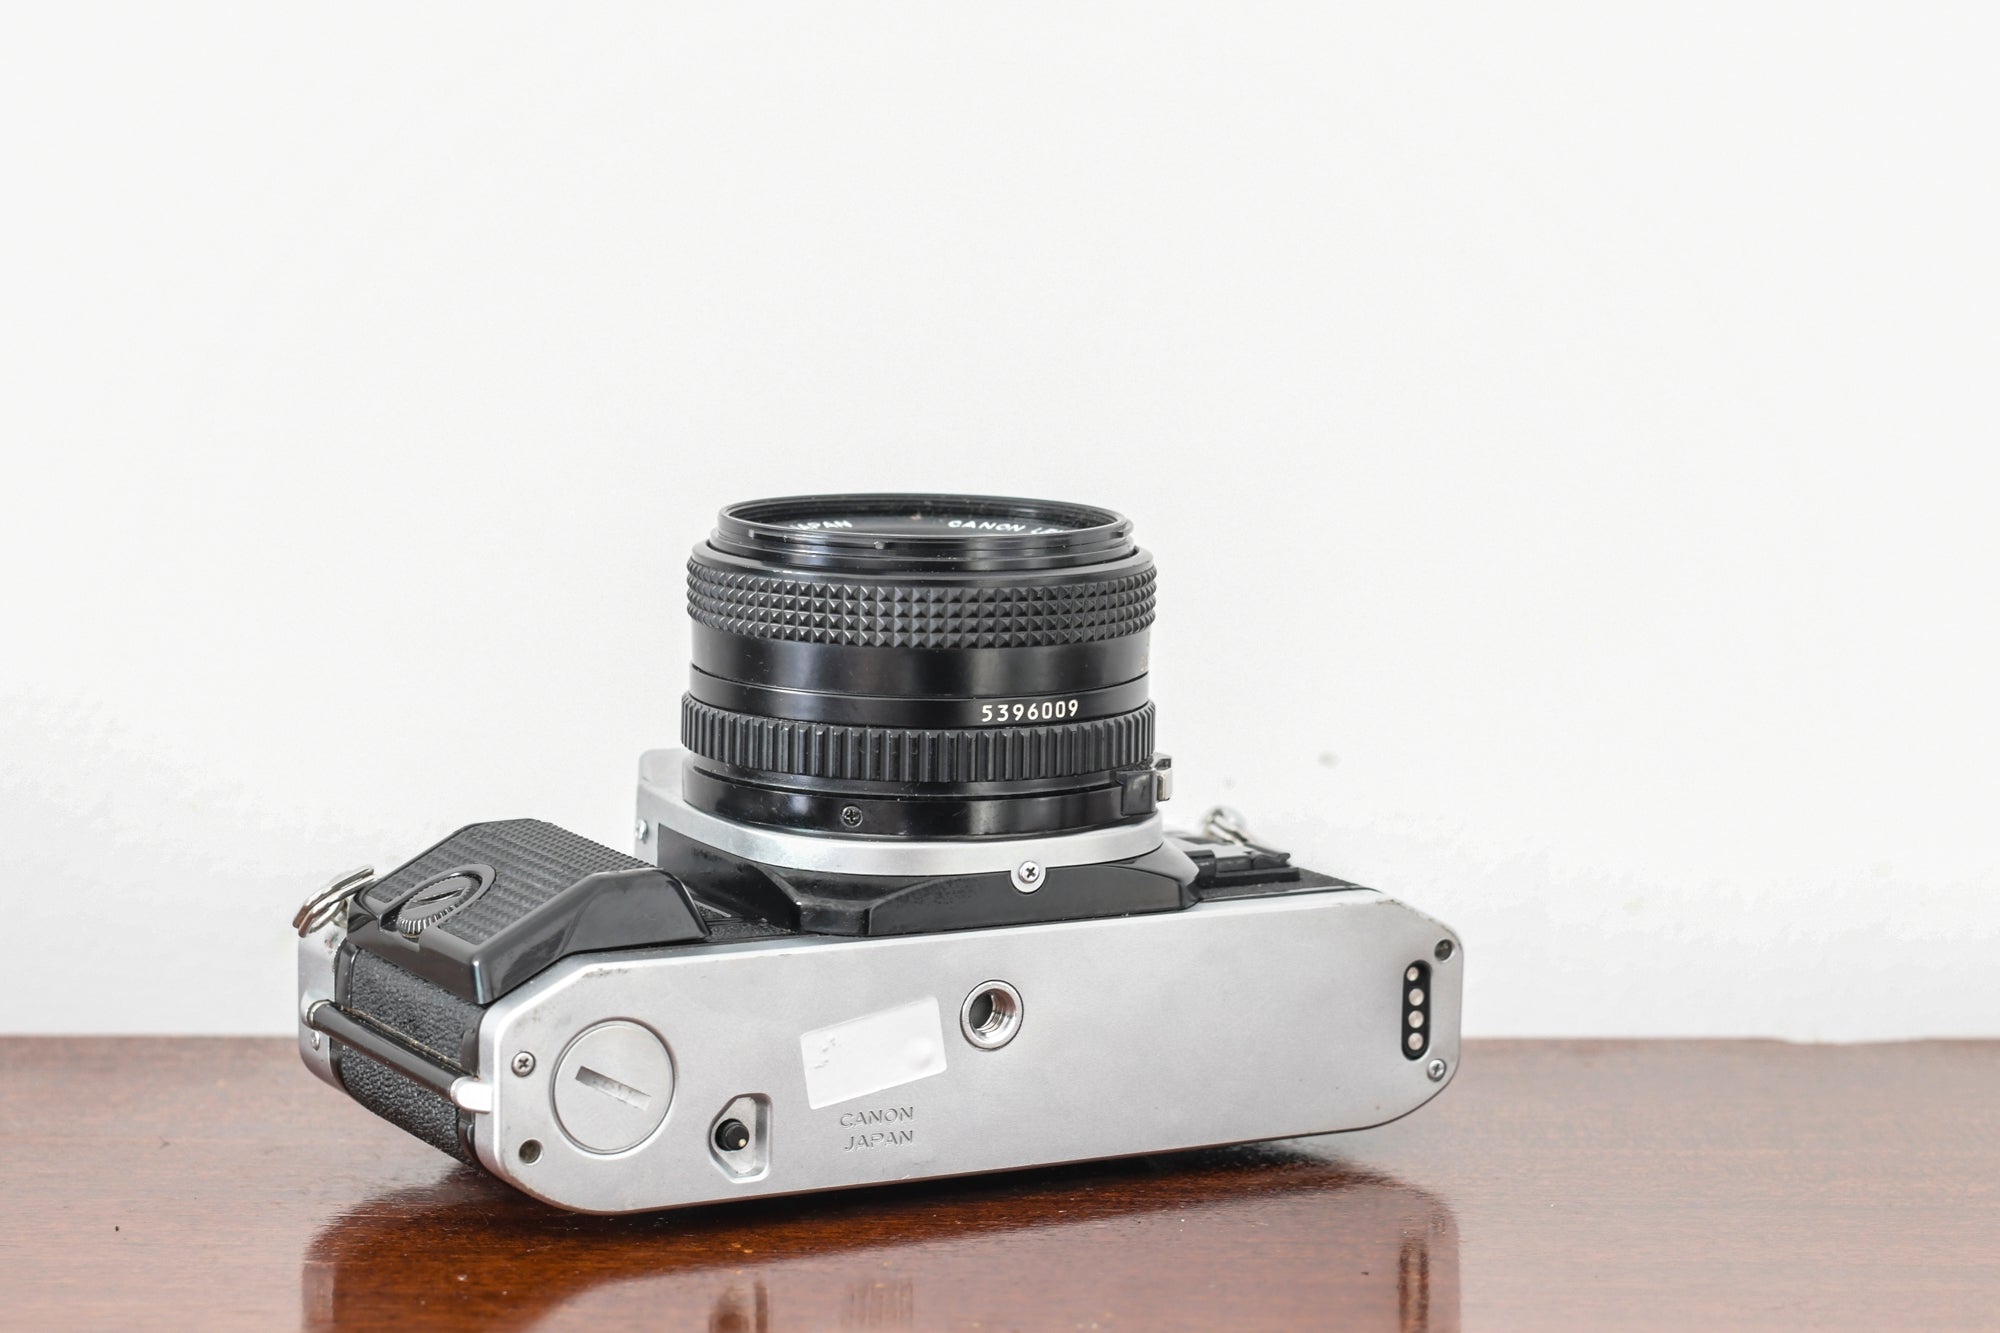 【購入可能】Canon AE-1 PROGRAM/FD 50mm 1:1.8 (良品） インスタントカメラ